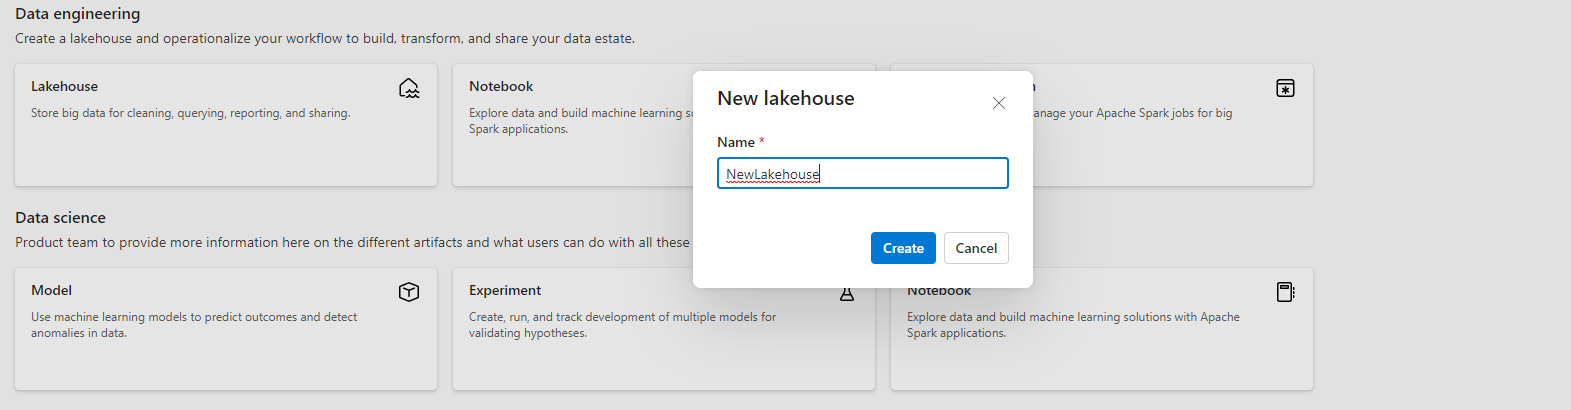 Skærmbillede, der viser, hvor du skal angive navnet på dit nye lakehouse.